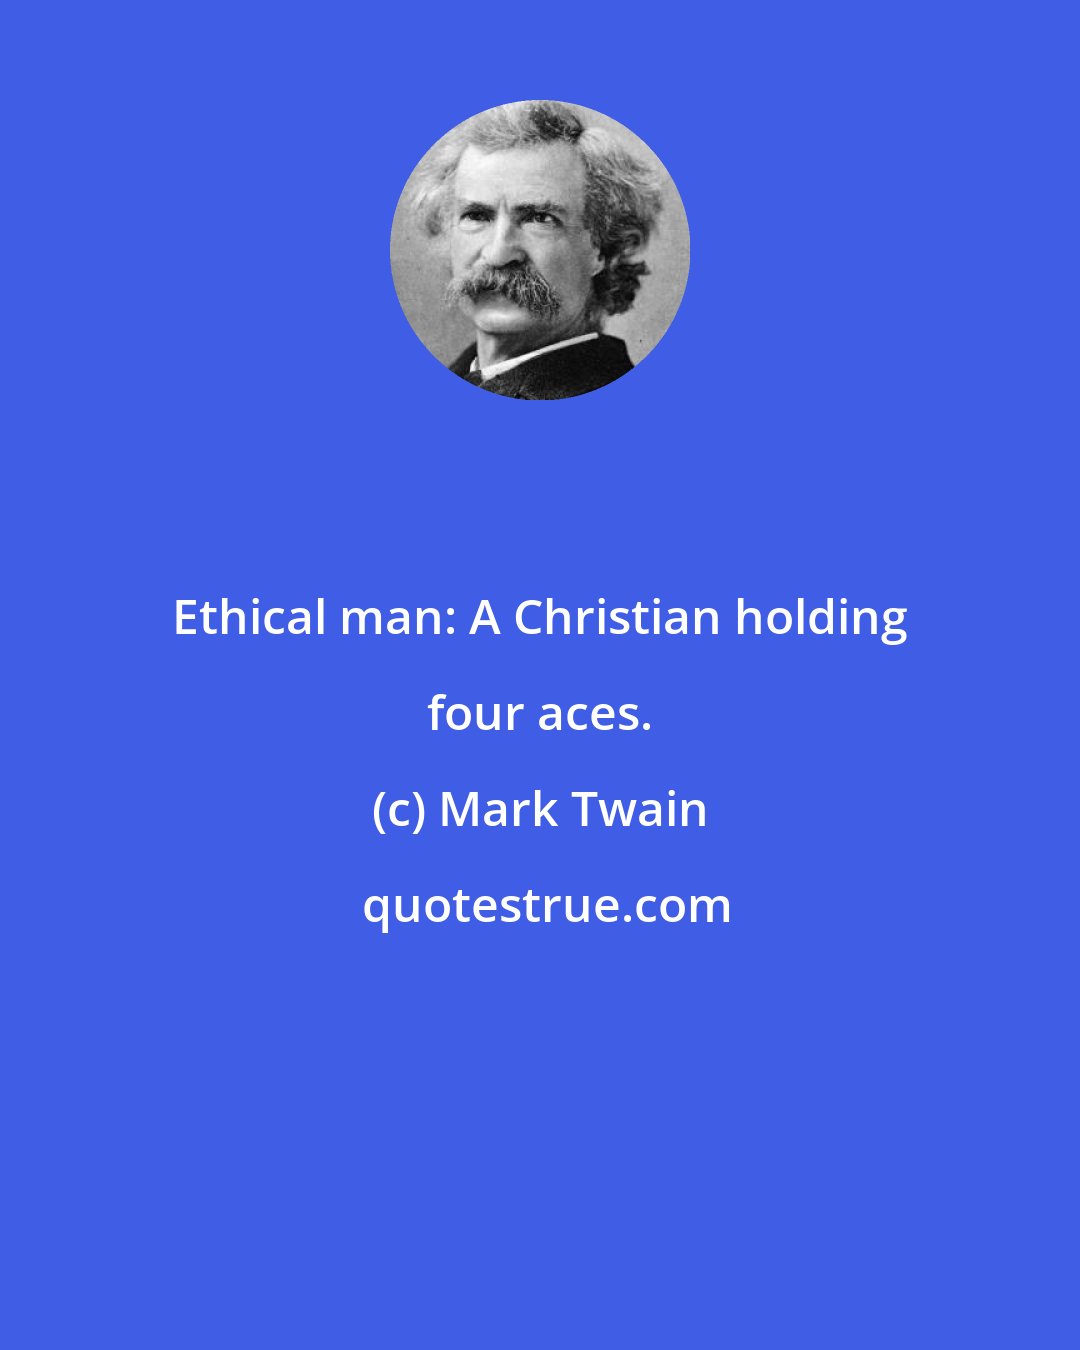 Mark Twain: Ethical man: A Christian holding four aces.